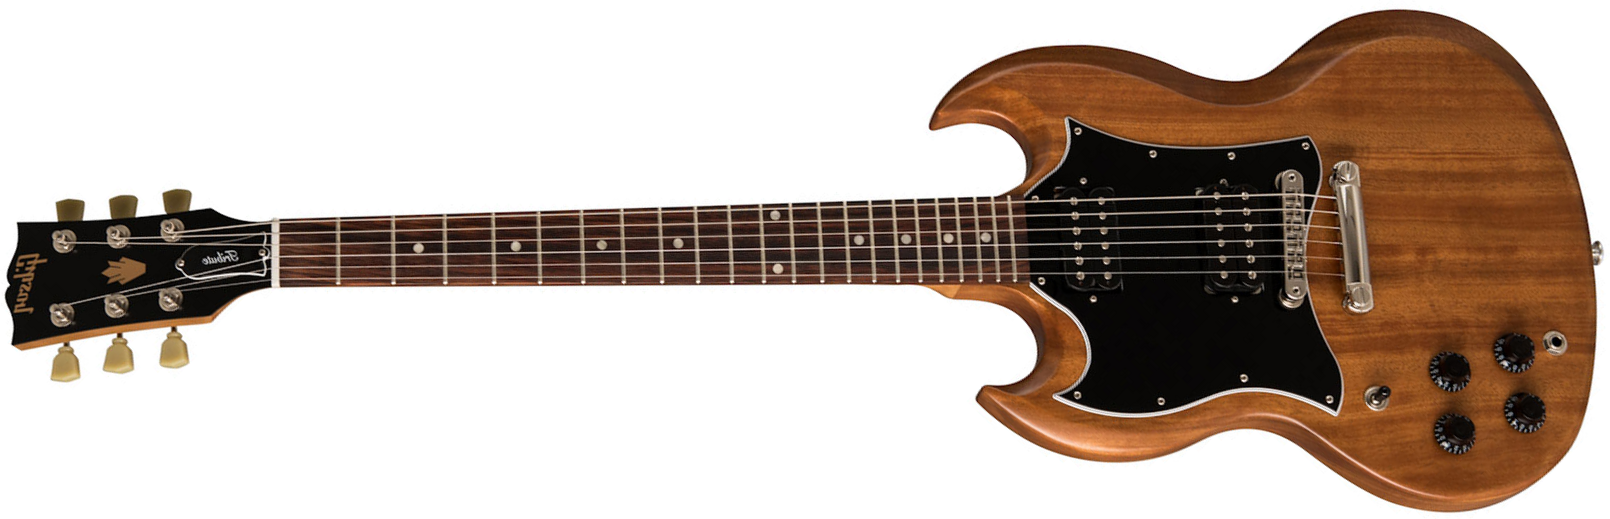 Gibson Sg Tribute Lh Modern Gaucher 2h Ht Rw - Natural Walnut - Linkshandige elektrische gitaar - Main picture